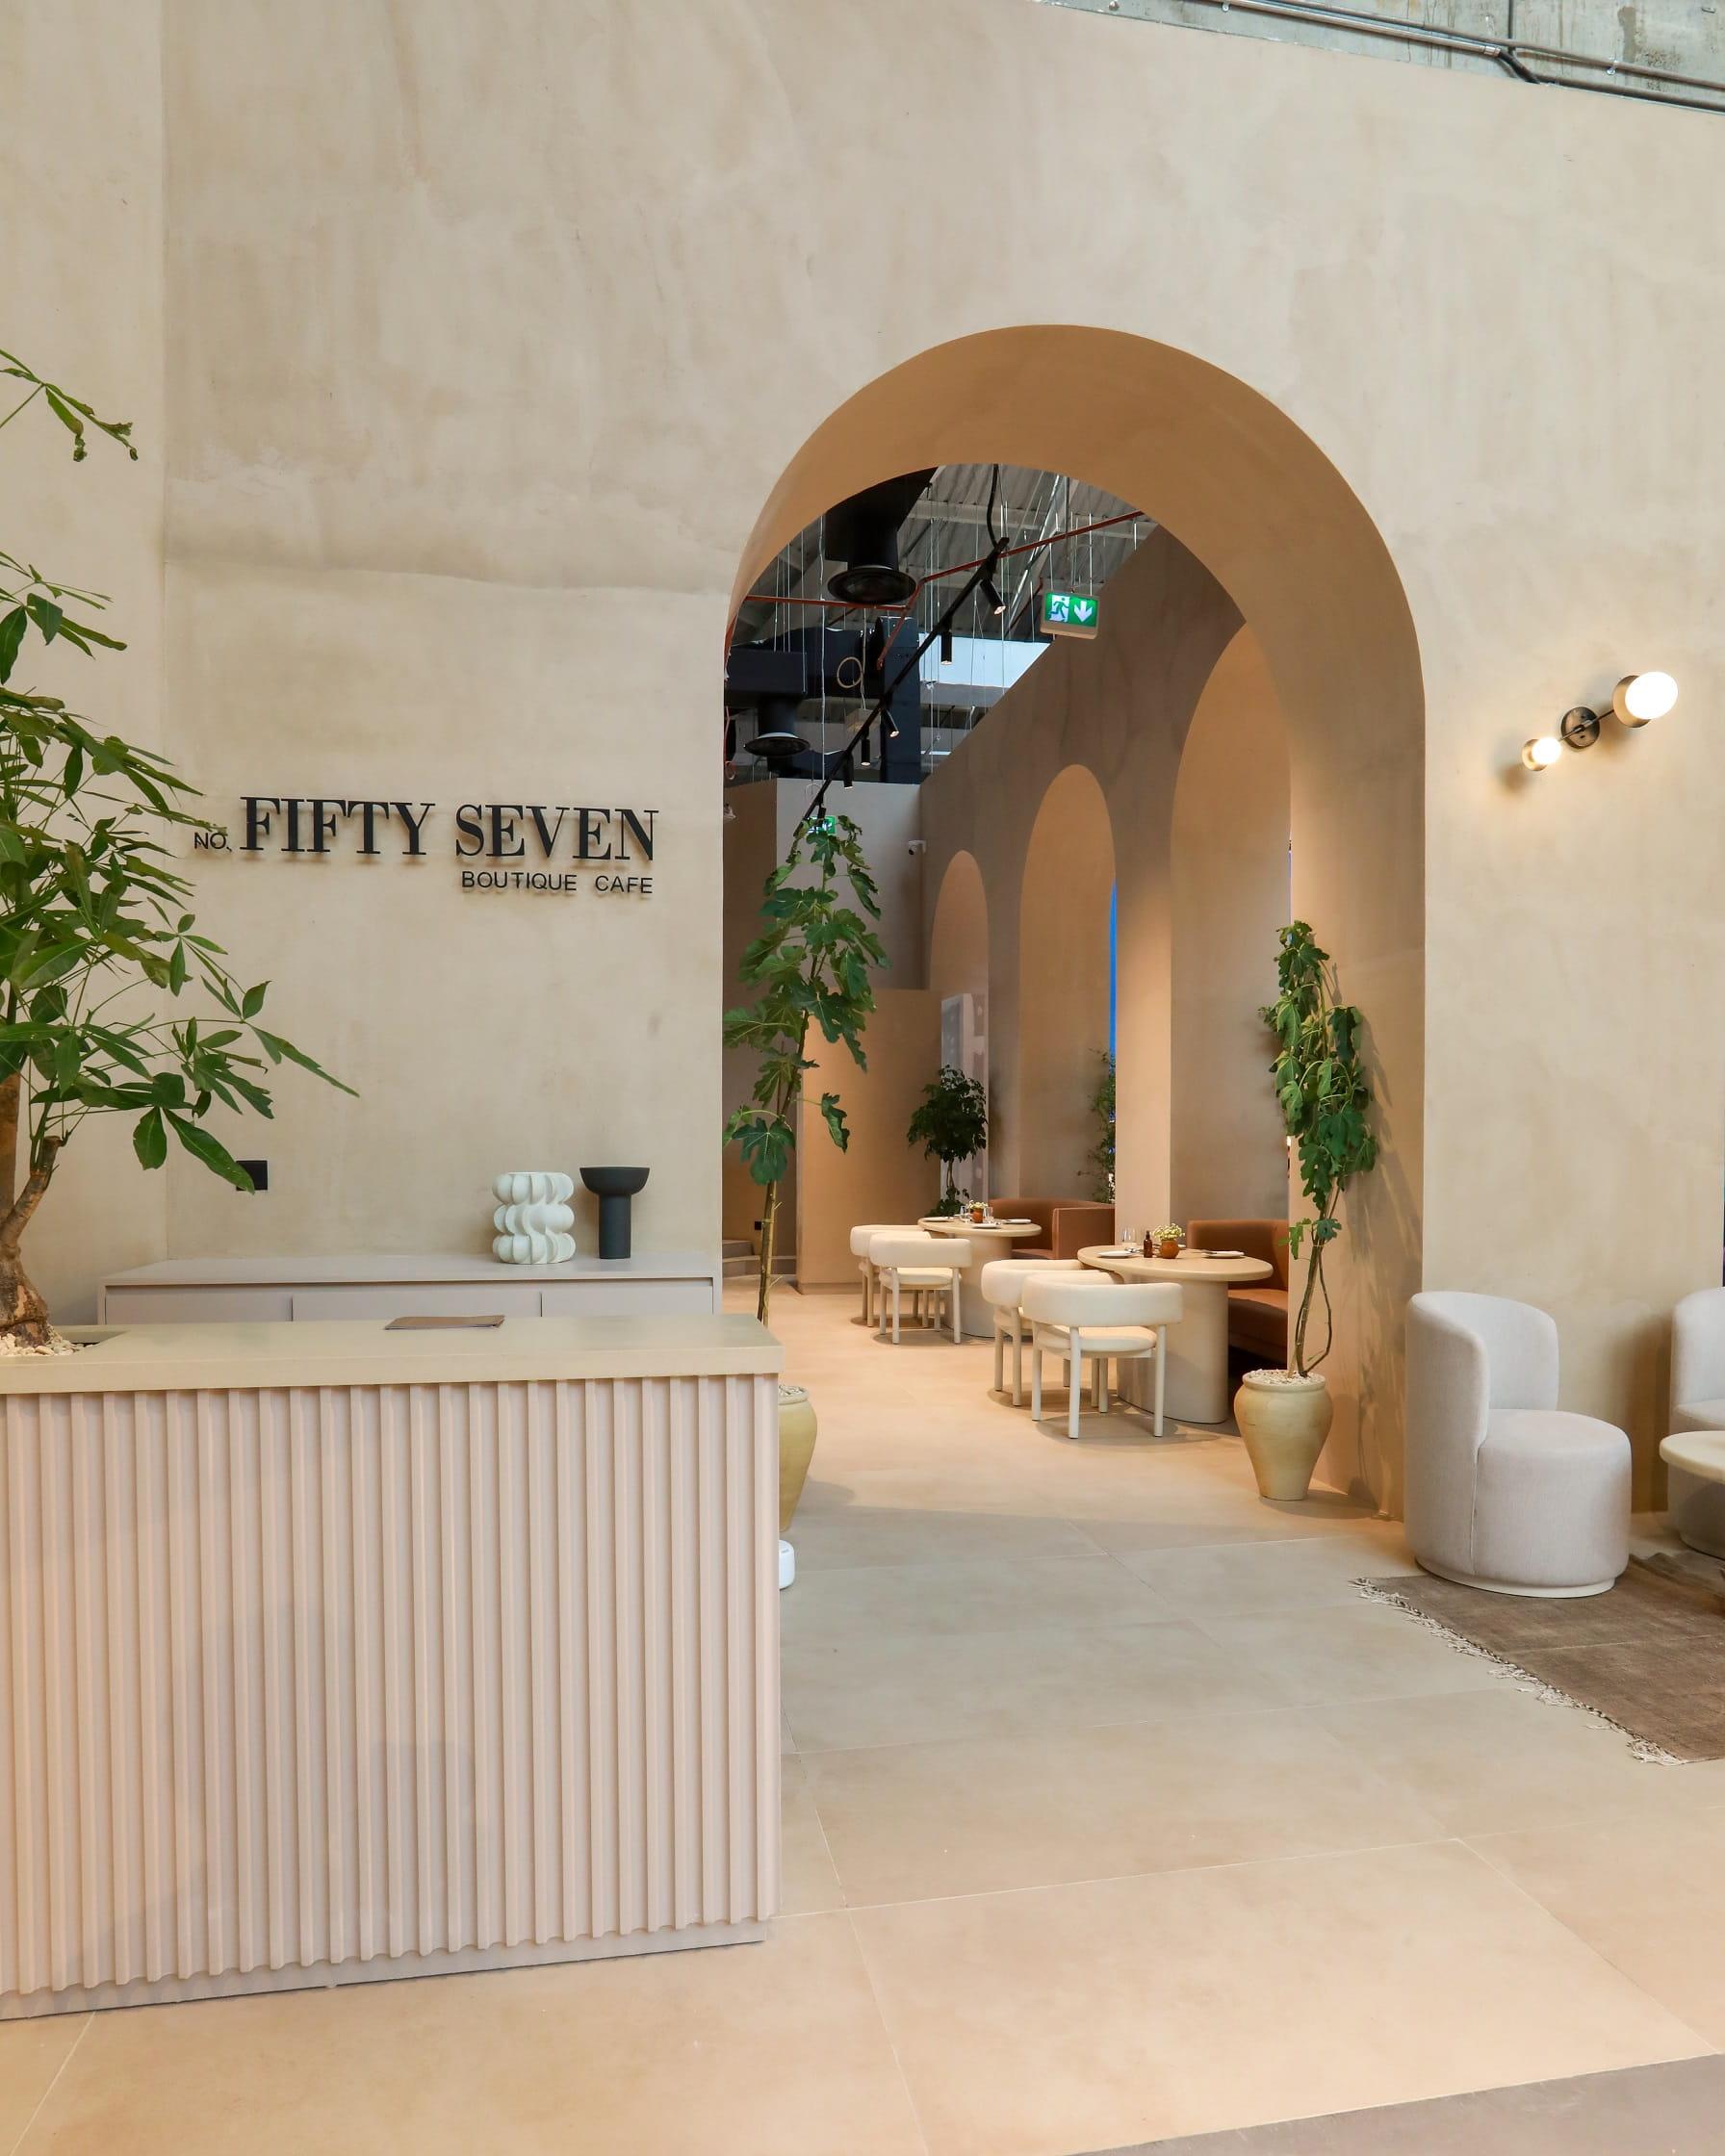 No. FiftySeven Boutique Café opens in Dubai